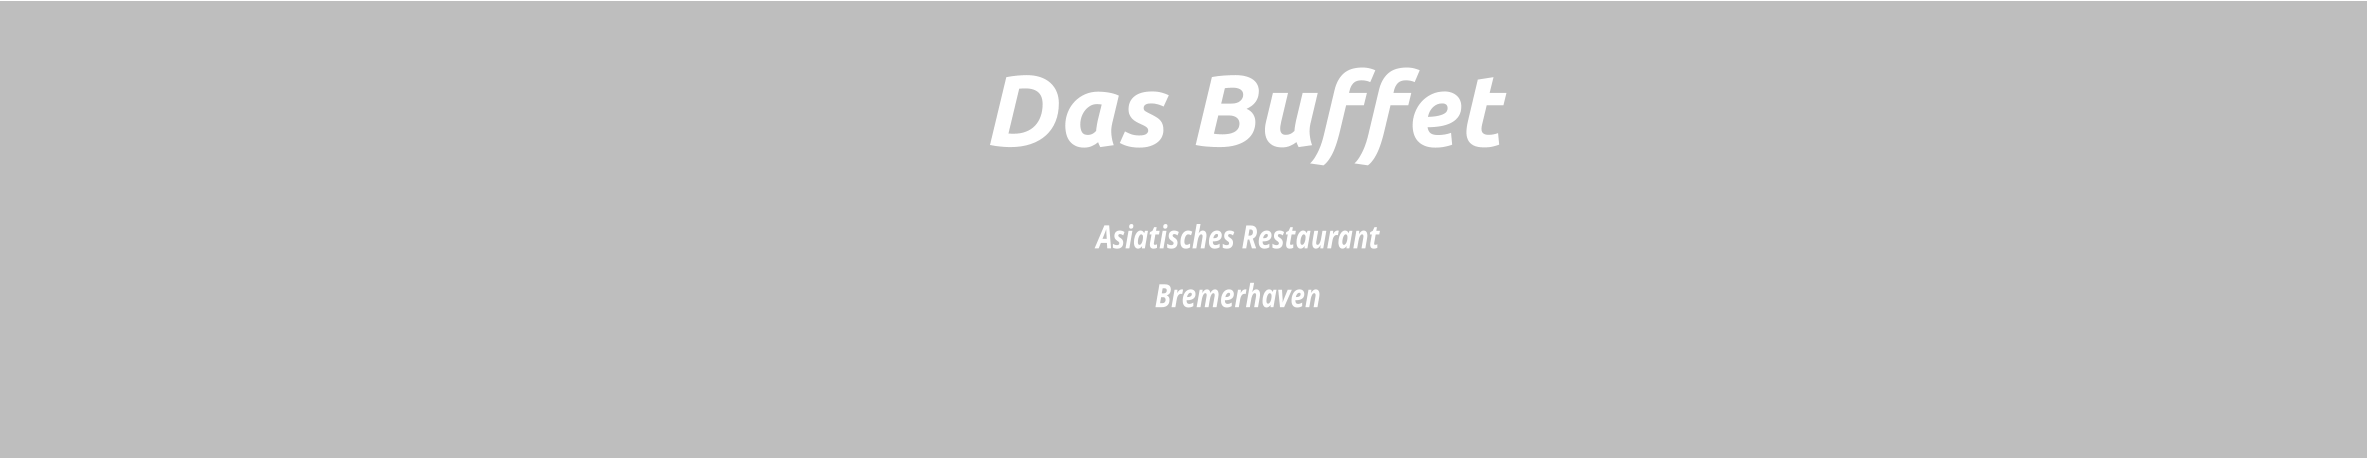 Das Buffet Asiatisches Restaurant Bremerhaven